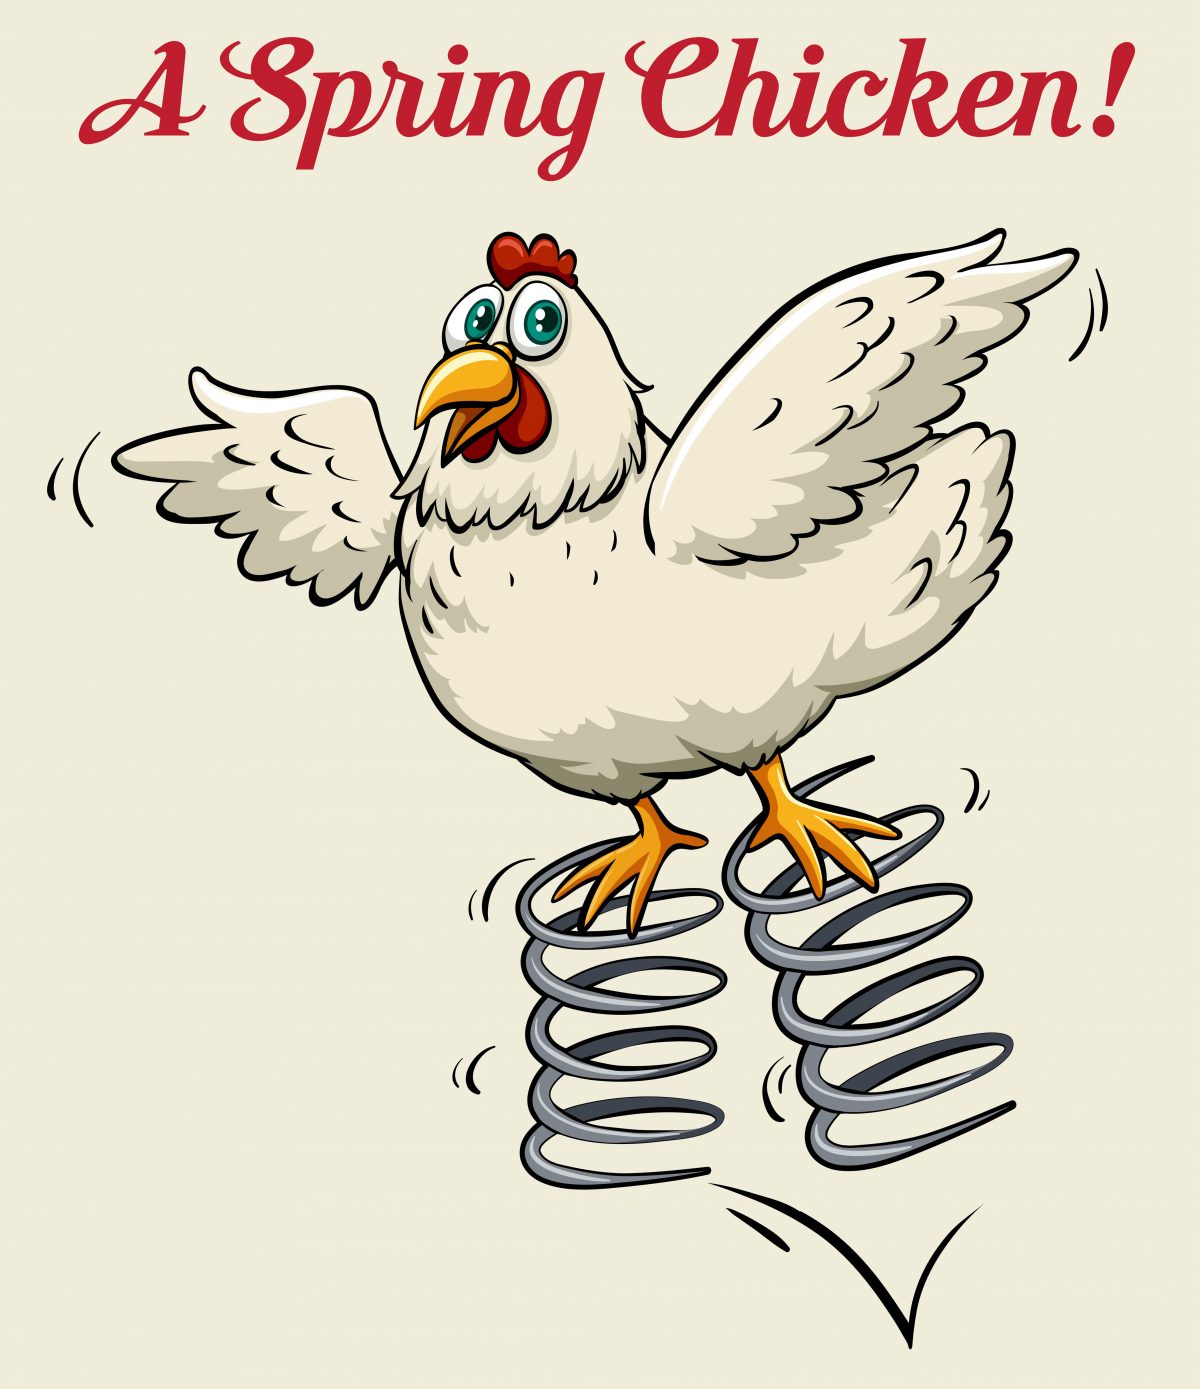 A spring chicken